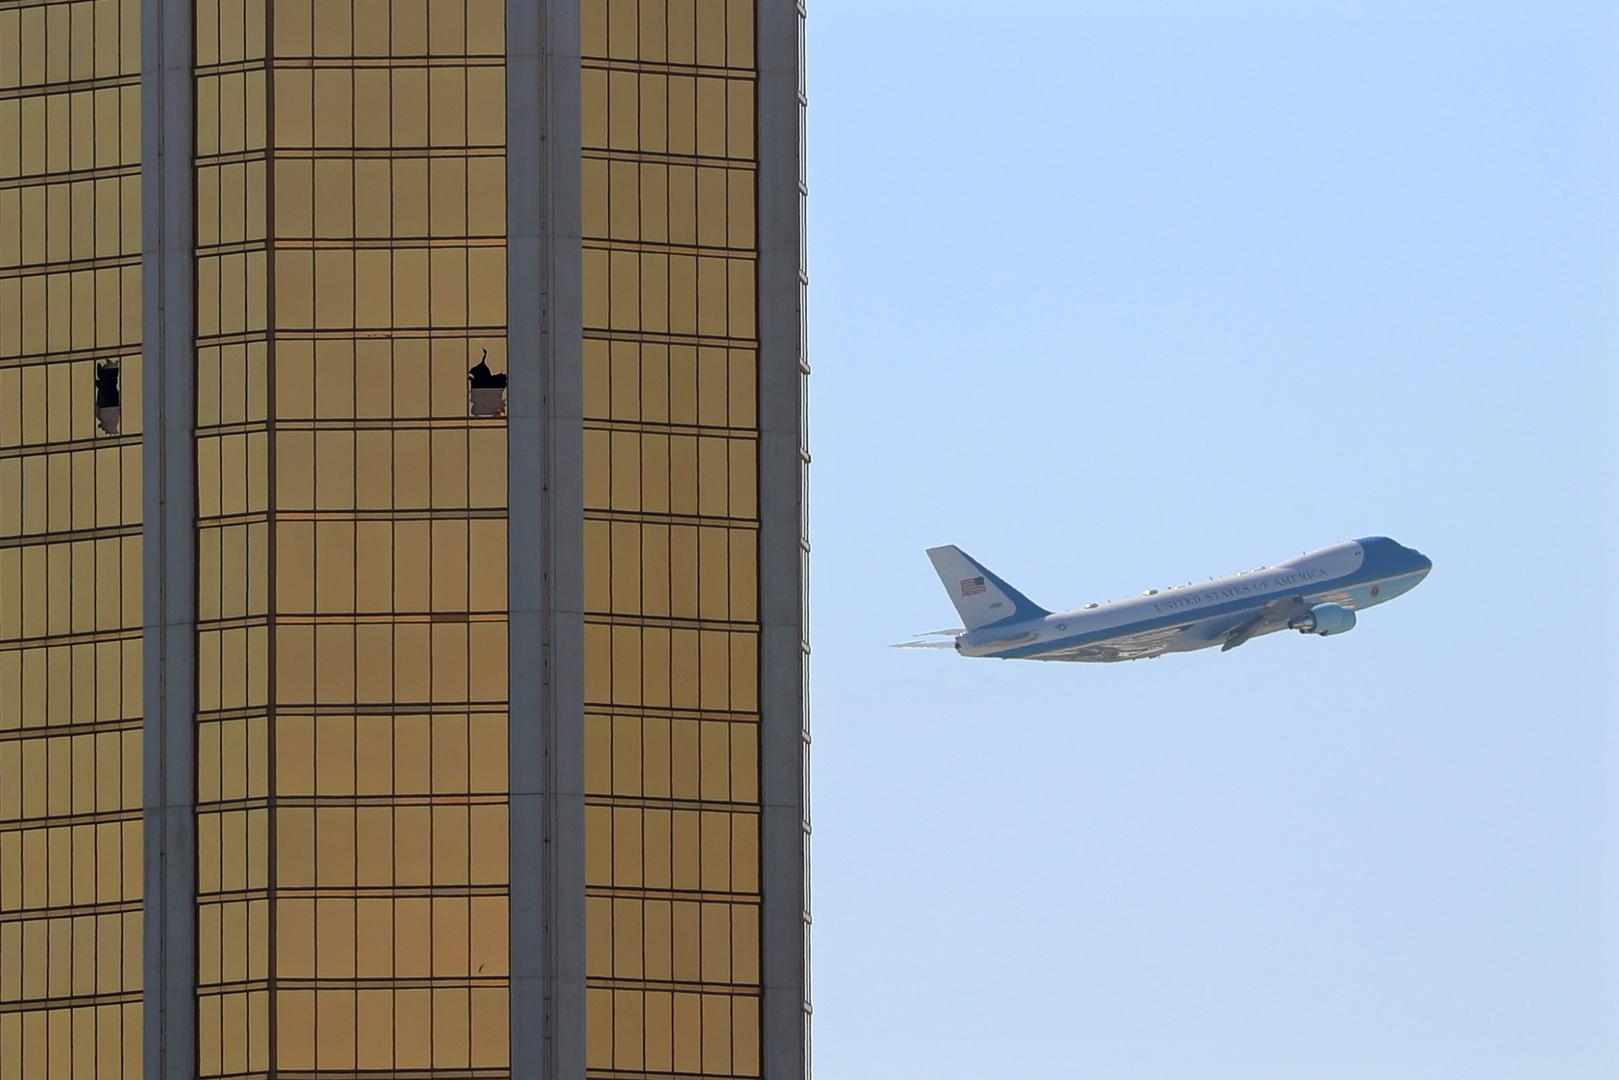 Zrakoplov američkog predsjednika Air Force One prolazi pored zgrade hotela Mandalay Bay u Las Vegasu, na kojoj se vide razbijeni prozori nakon masovne pucnjave napadača Stephena Paddocka.